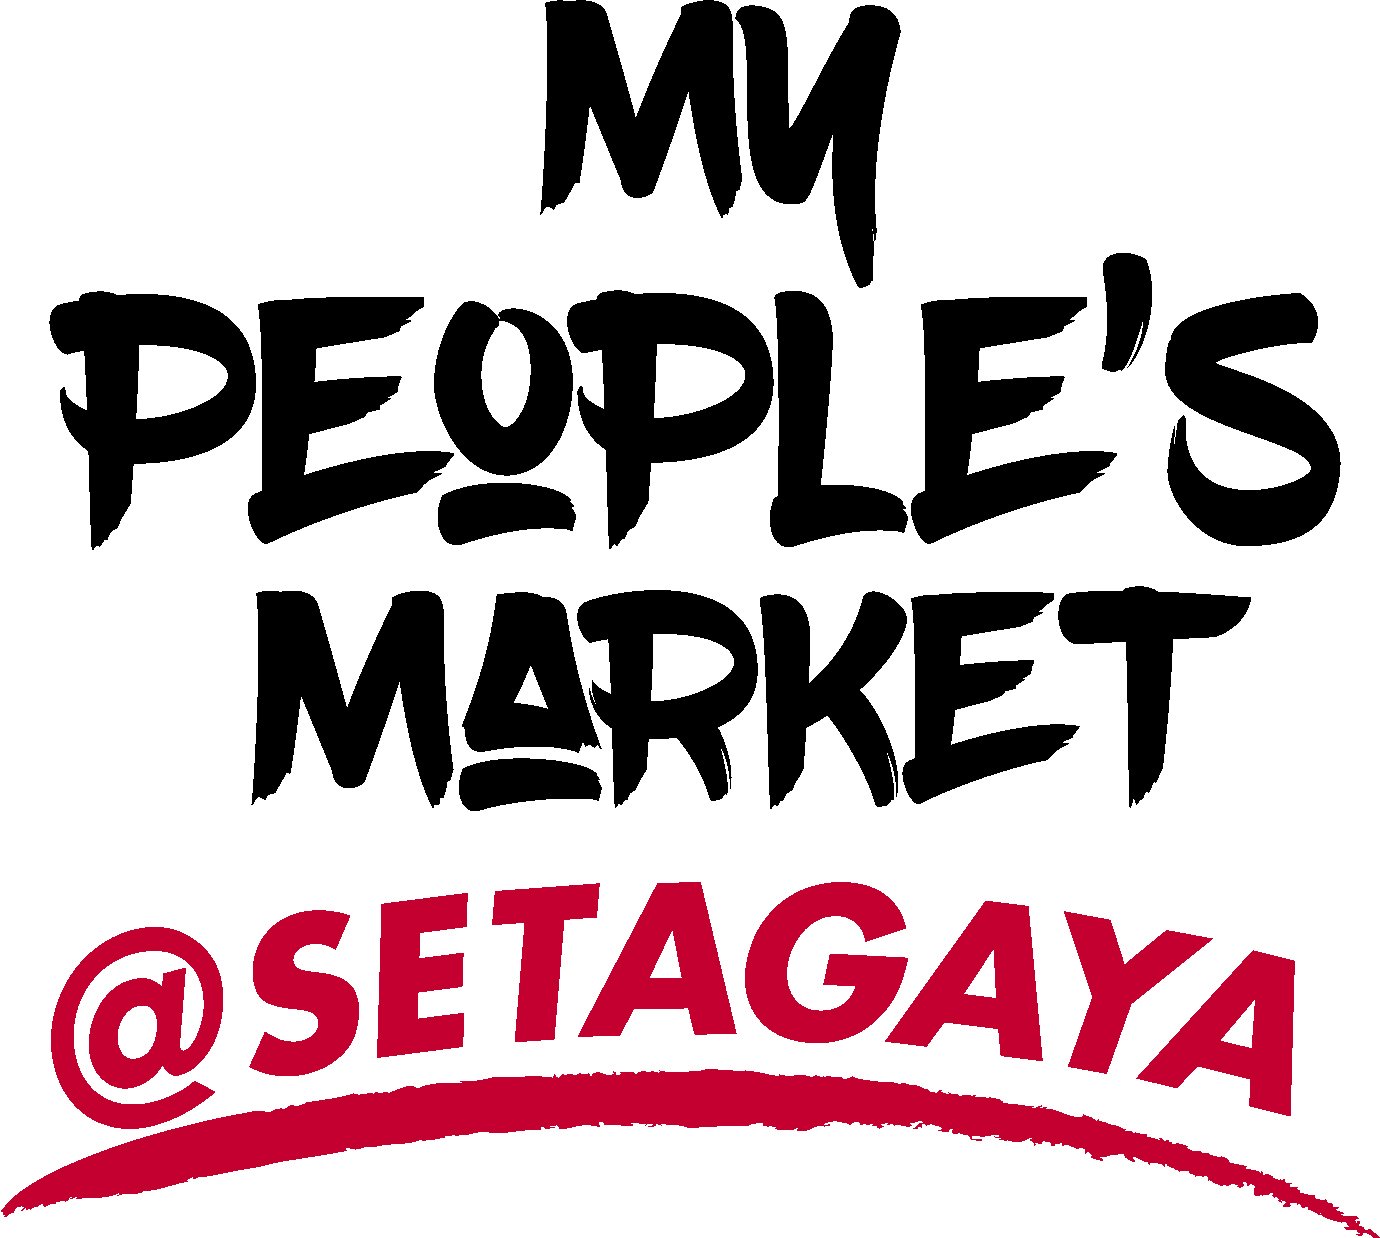 ポートランド市での市民イベント ― My People’s Market ― が
2年半ぶりに世田谷区にて開催！